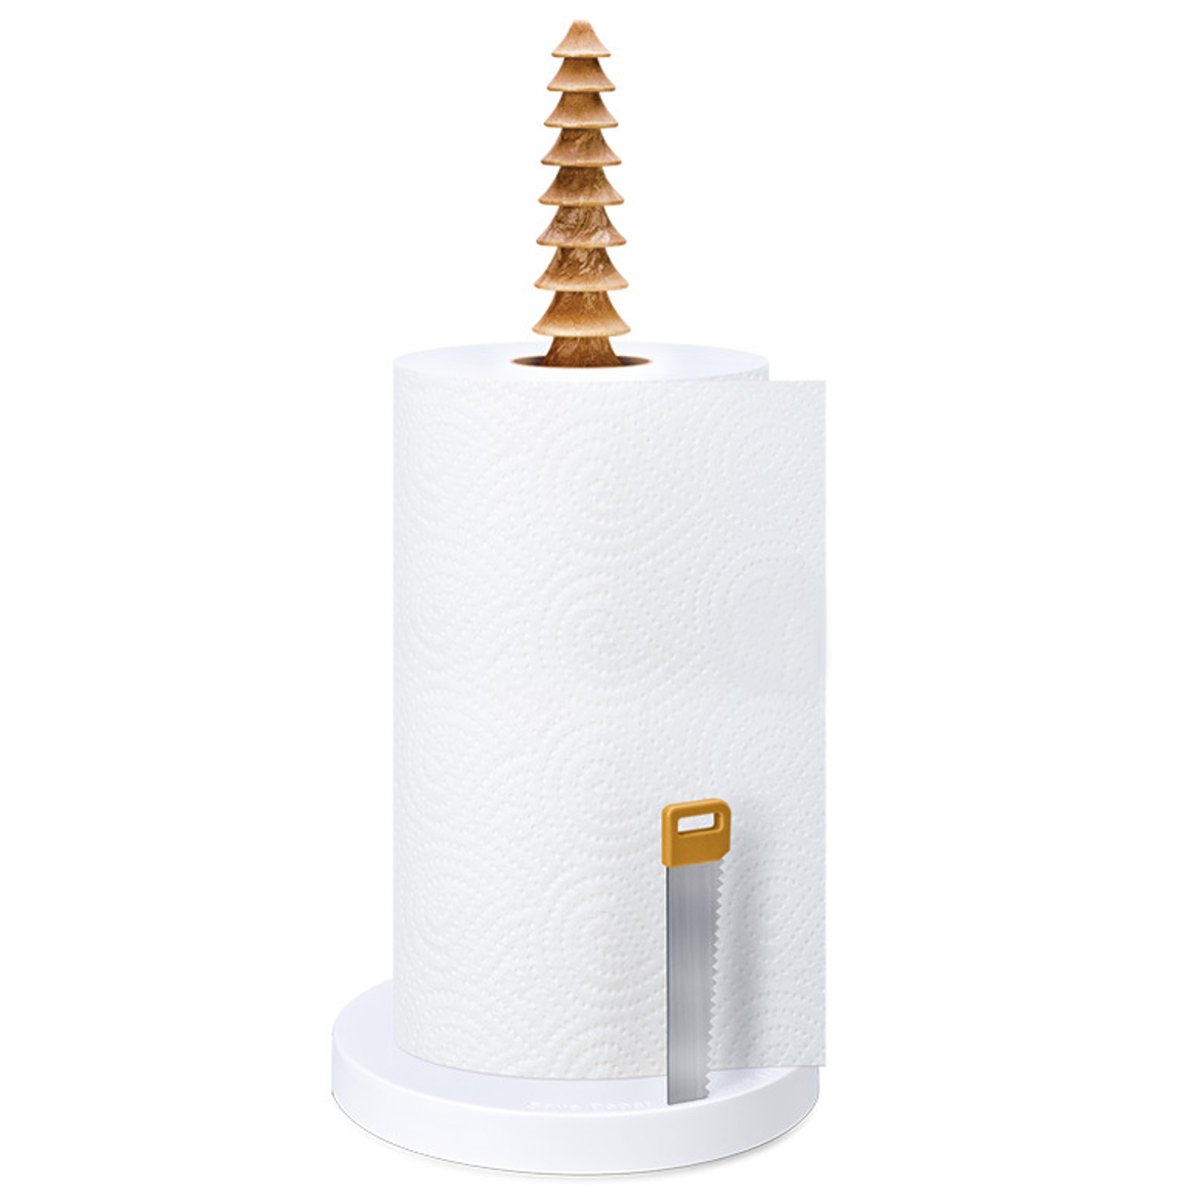 Kitchen-Paper-Towel-Holder-Free-Standing-Bathroom-Tissue-Roll-Dispenser-Storage-1612771-2